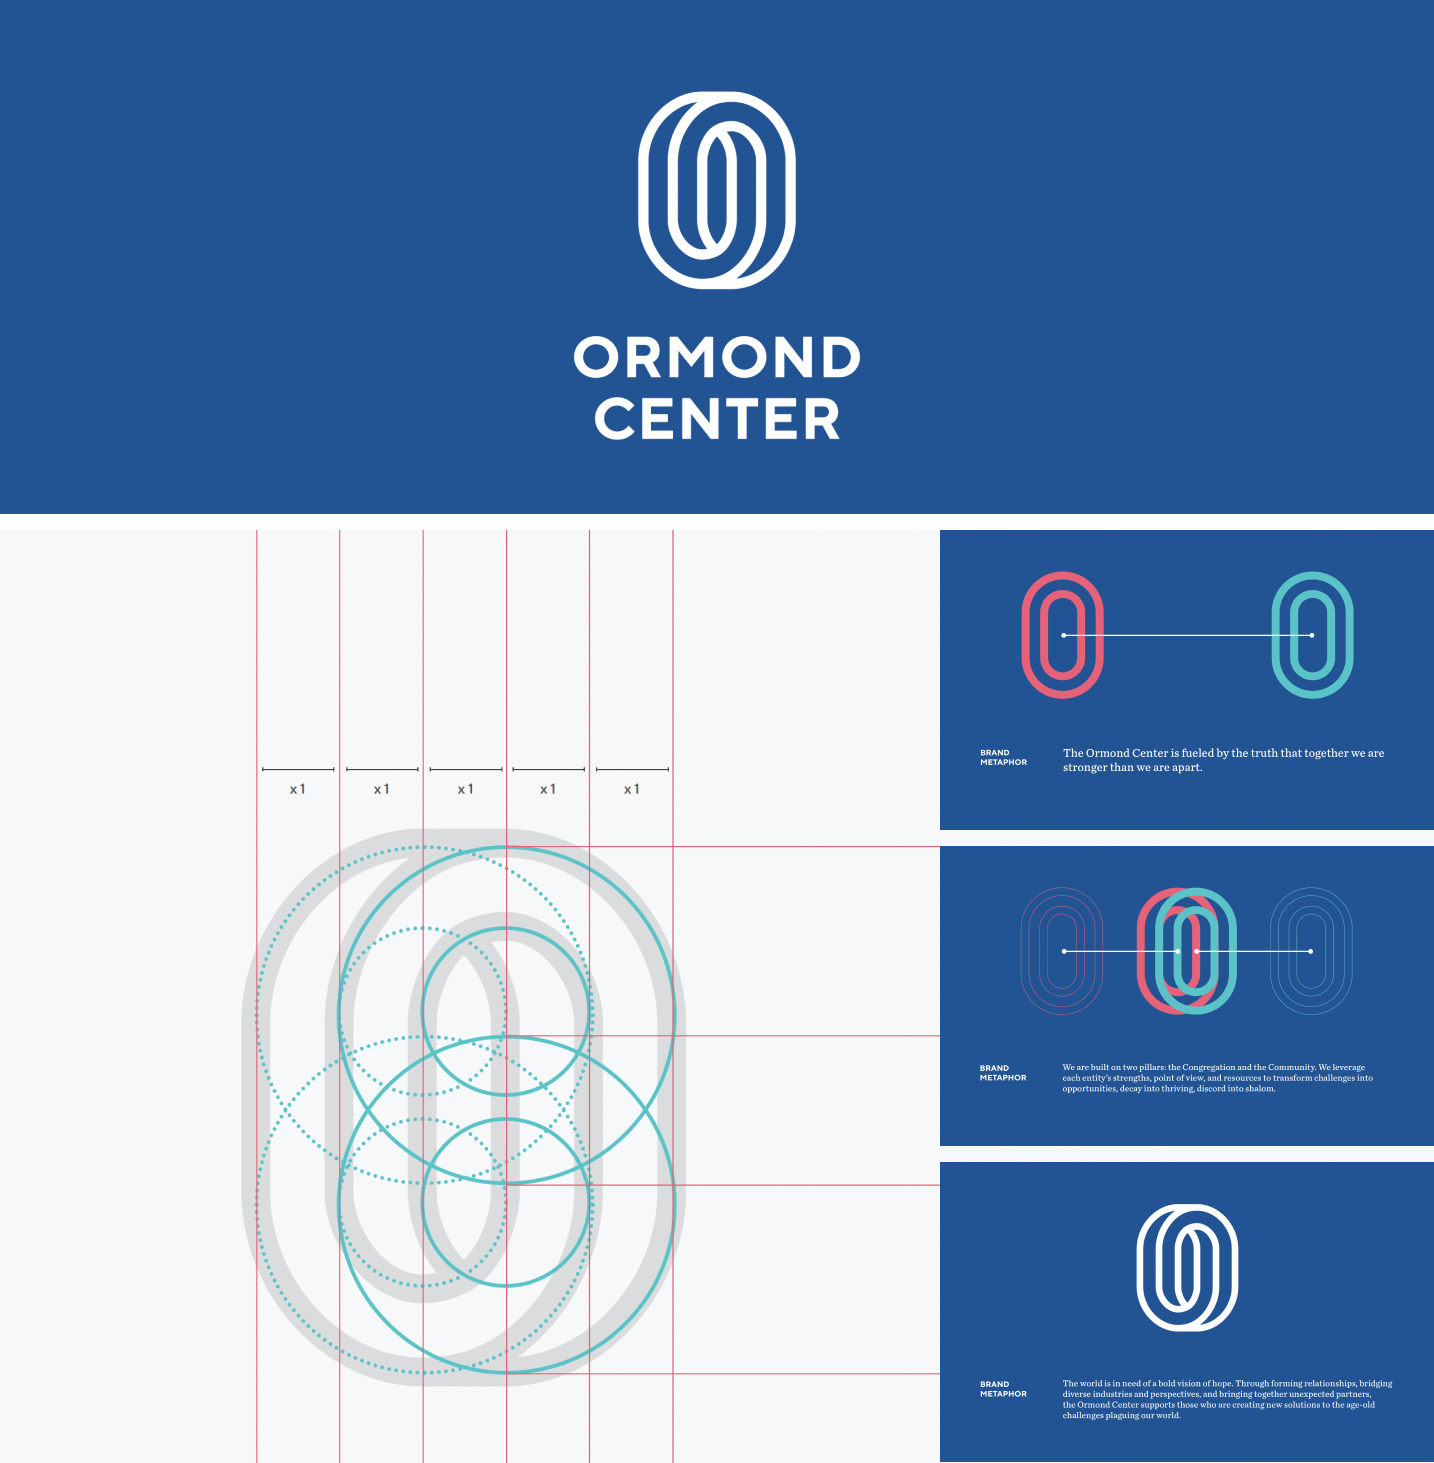 Ormond Center logo breakdown